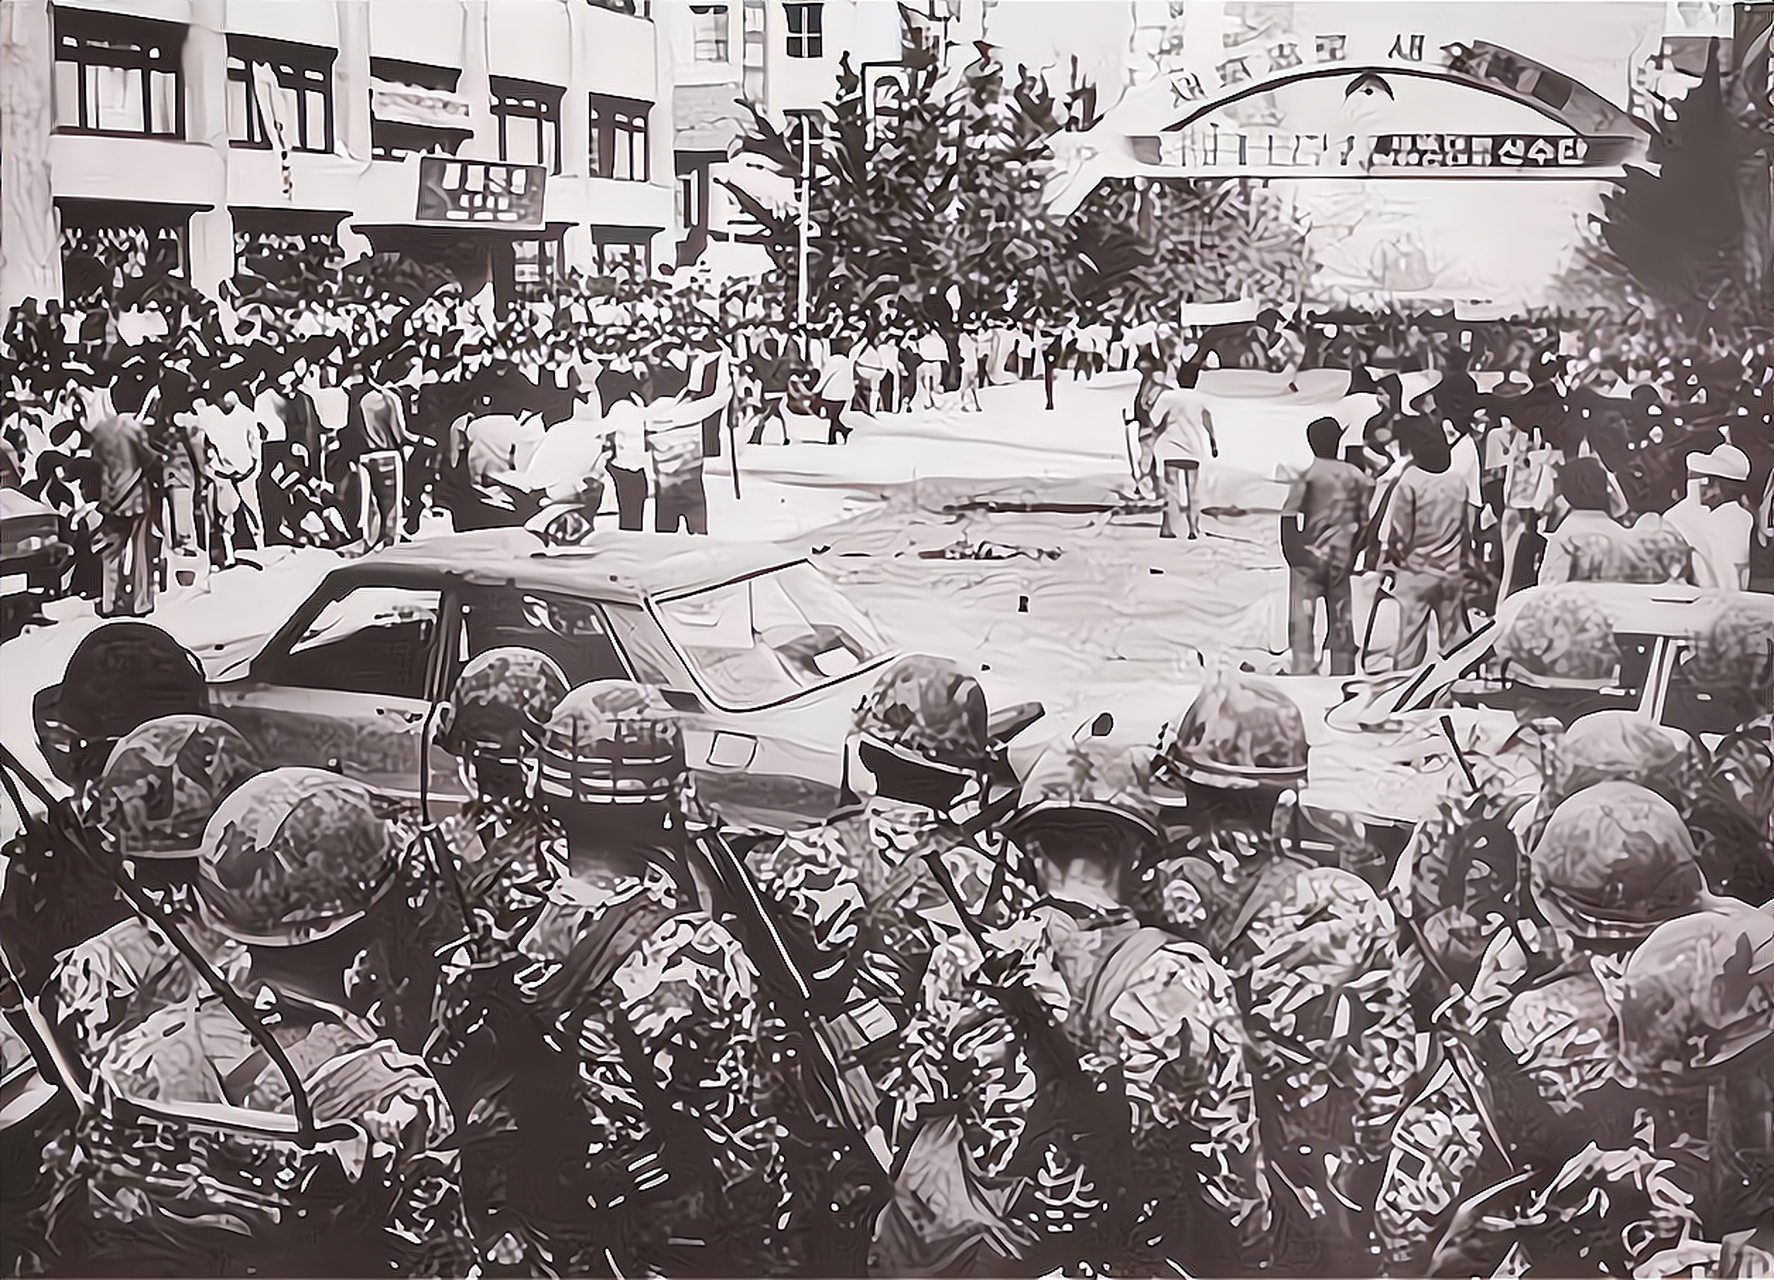 韩国光州民主化时期,街头有不少学生,工人聚集在一起,通过游行抗议